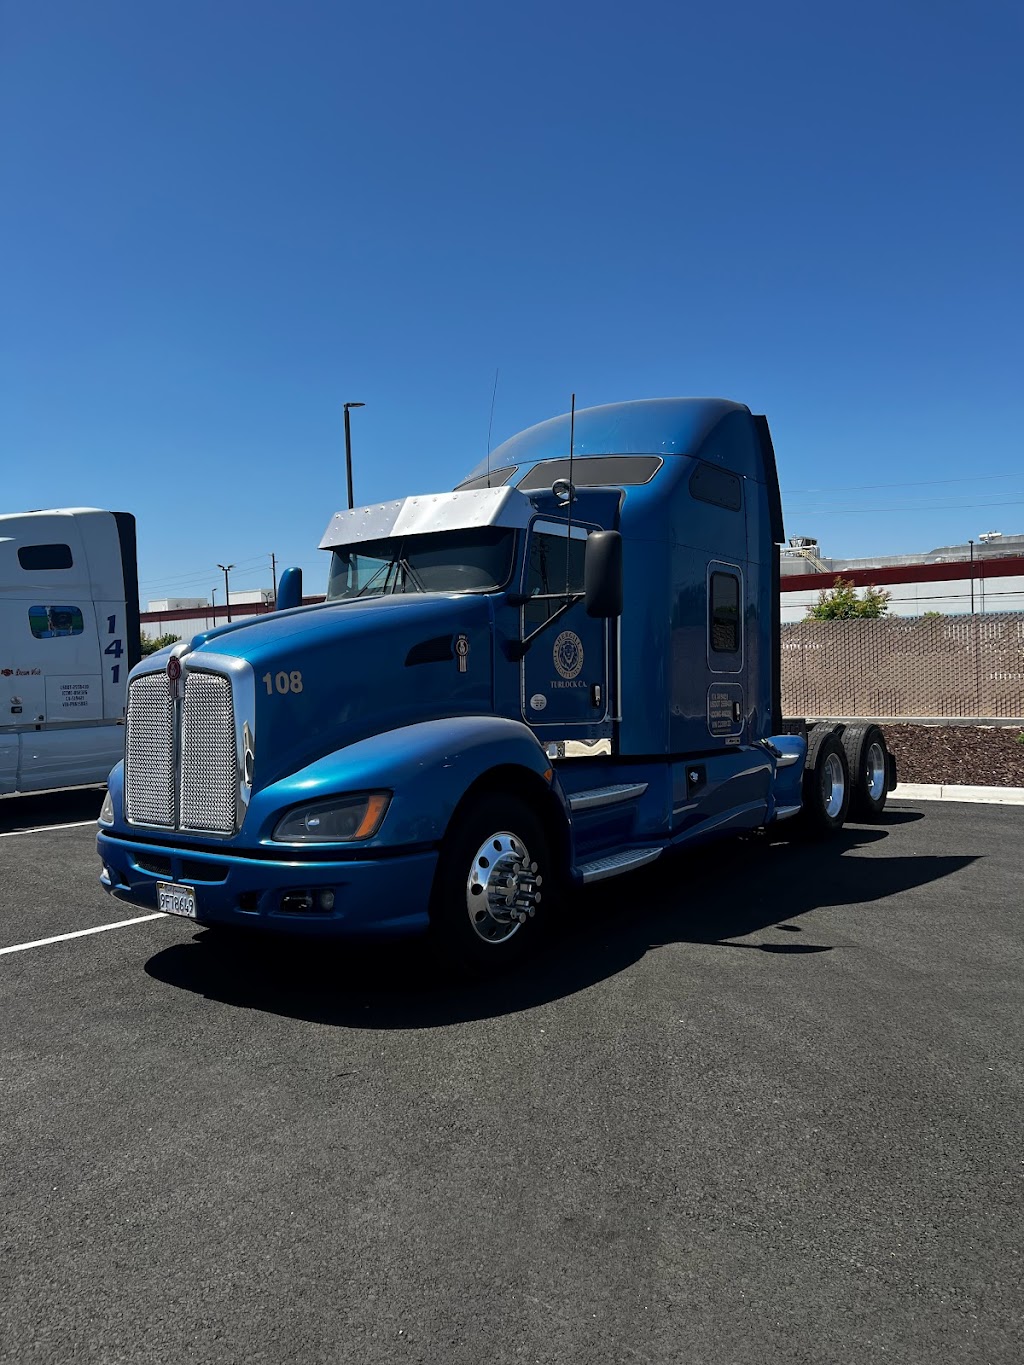 Semiyard Truck Parking | 1037 S Kilroy Rd, Turlock, CA 95380, USA | Phone: (916) 755-0085